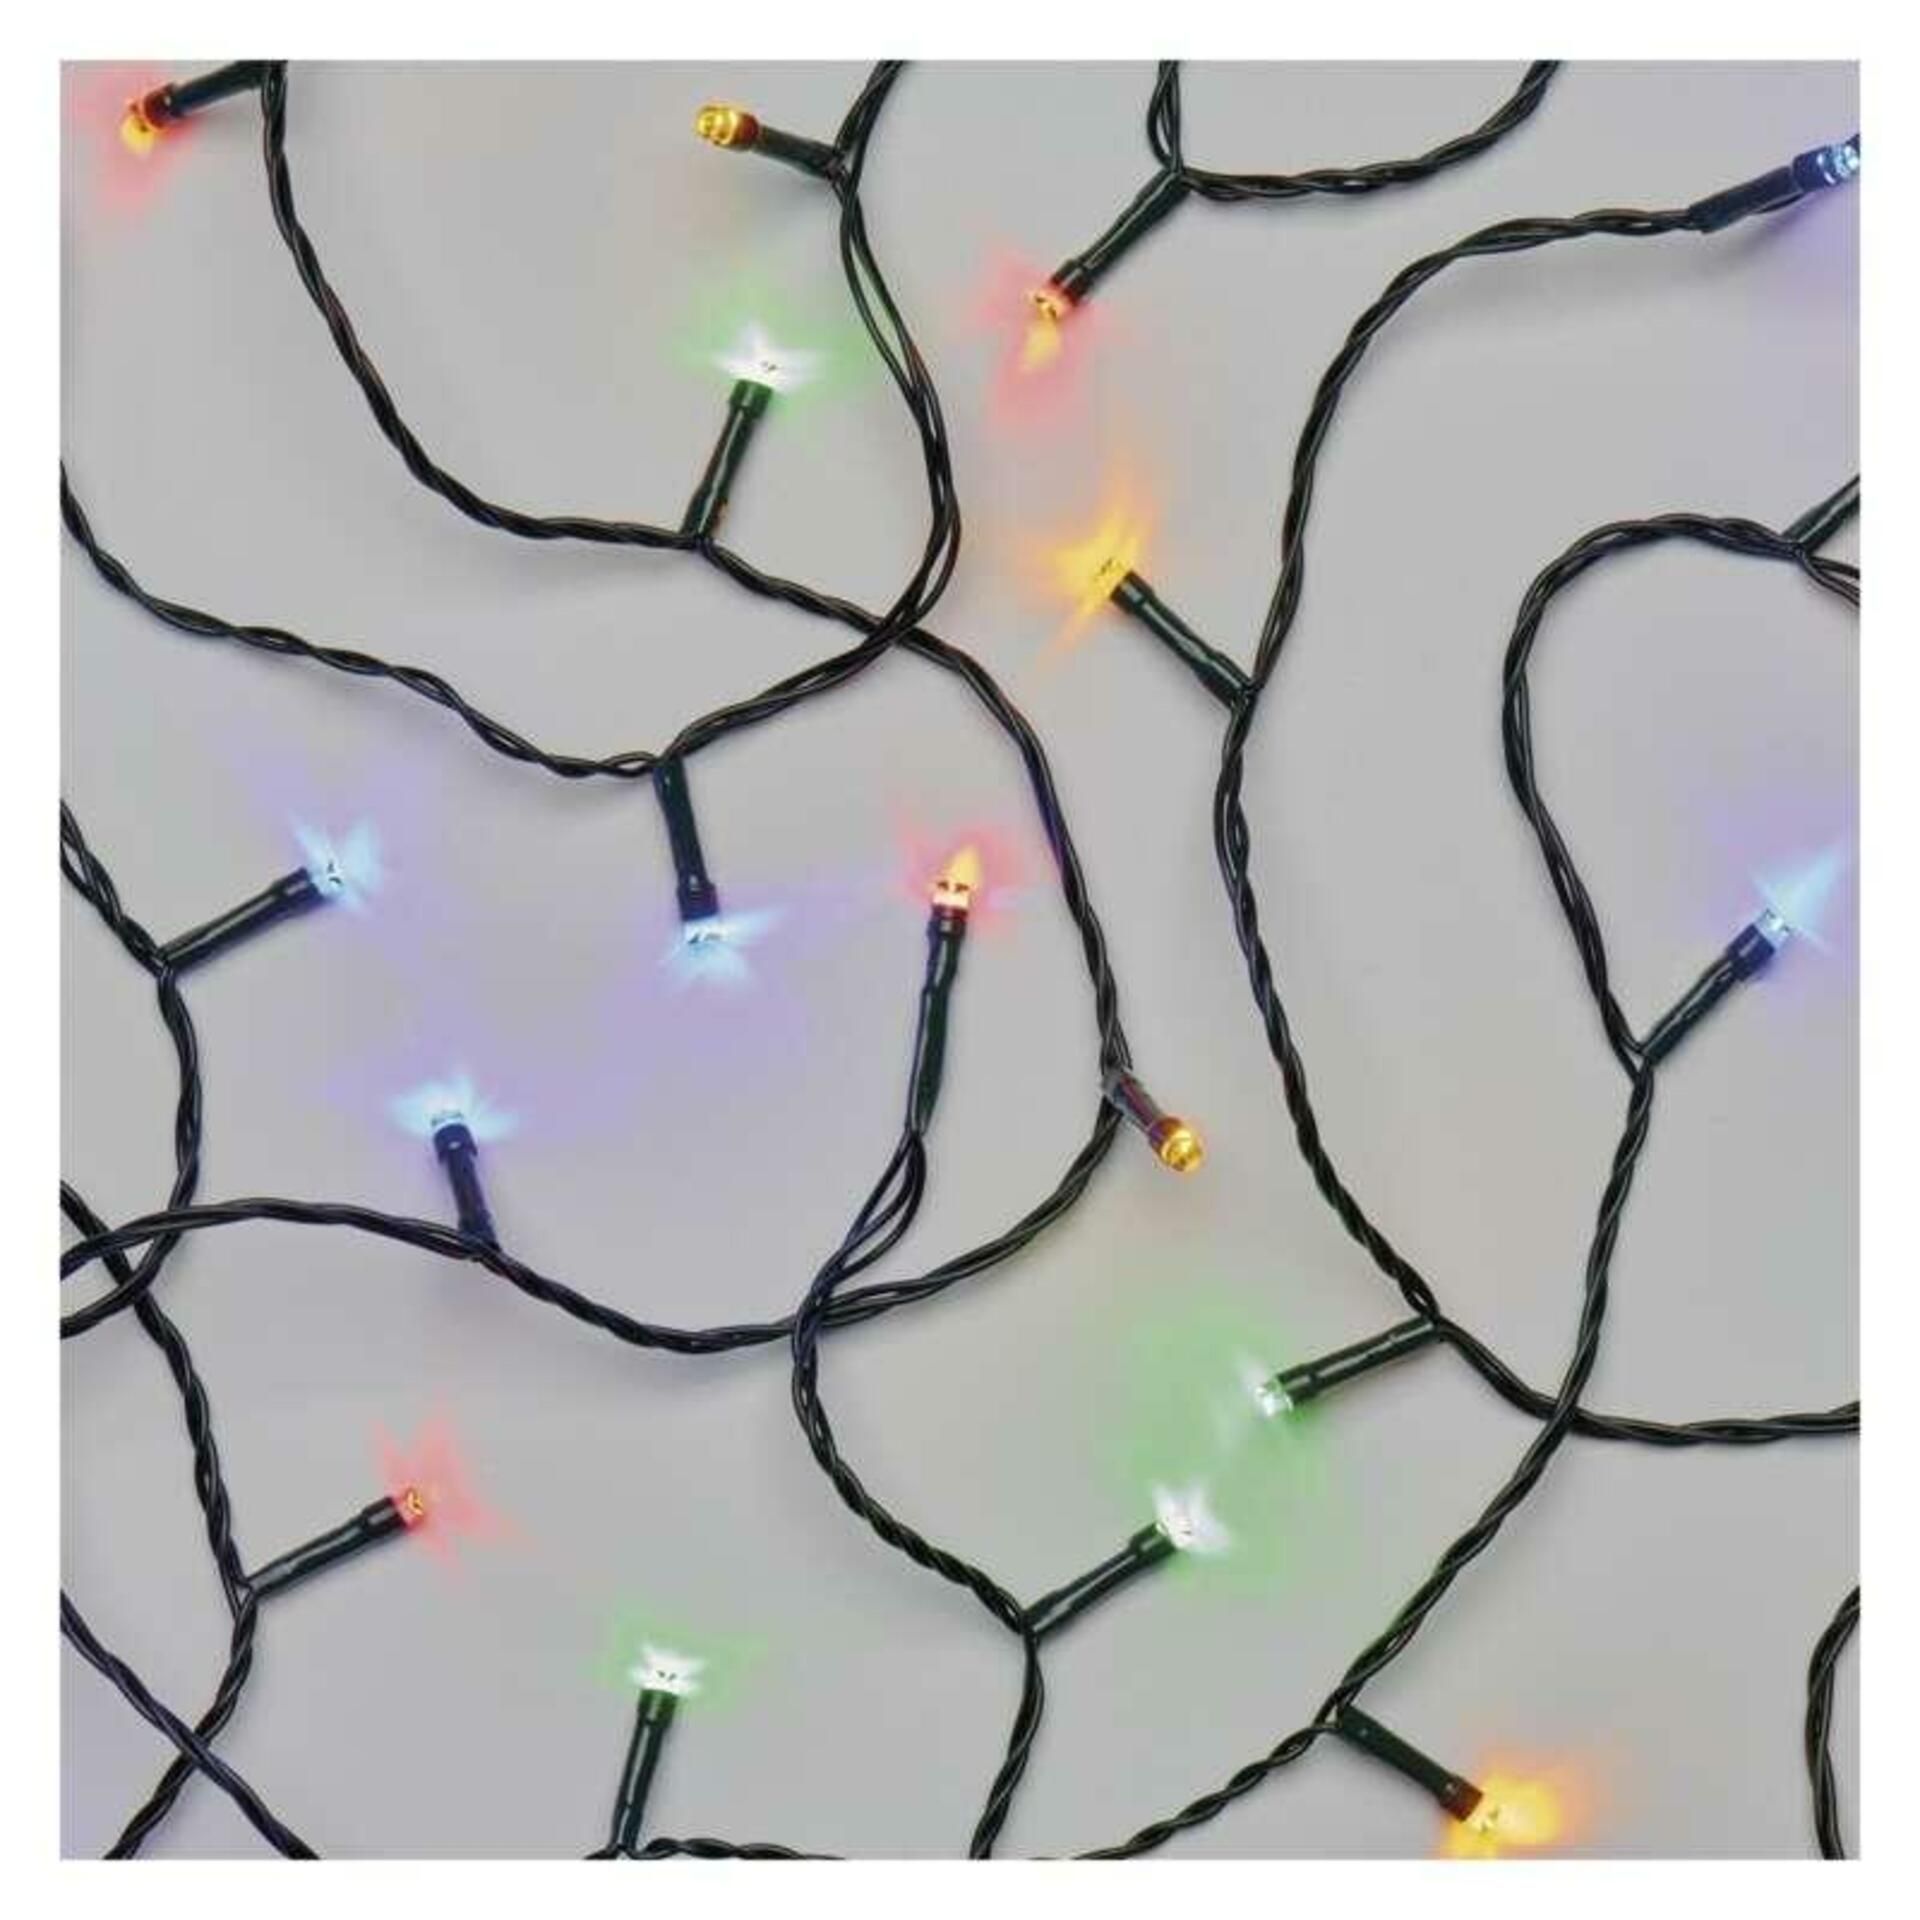 EMOS LED vánoční řetěz, 18 m, venkovní i vnitřní, multicolor, programy D4AM09